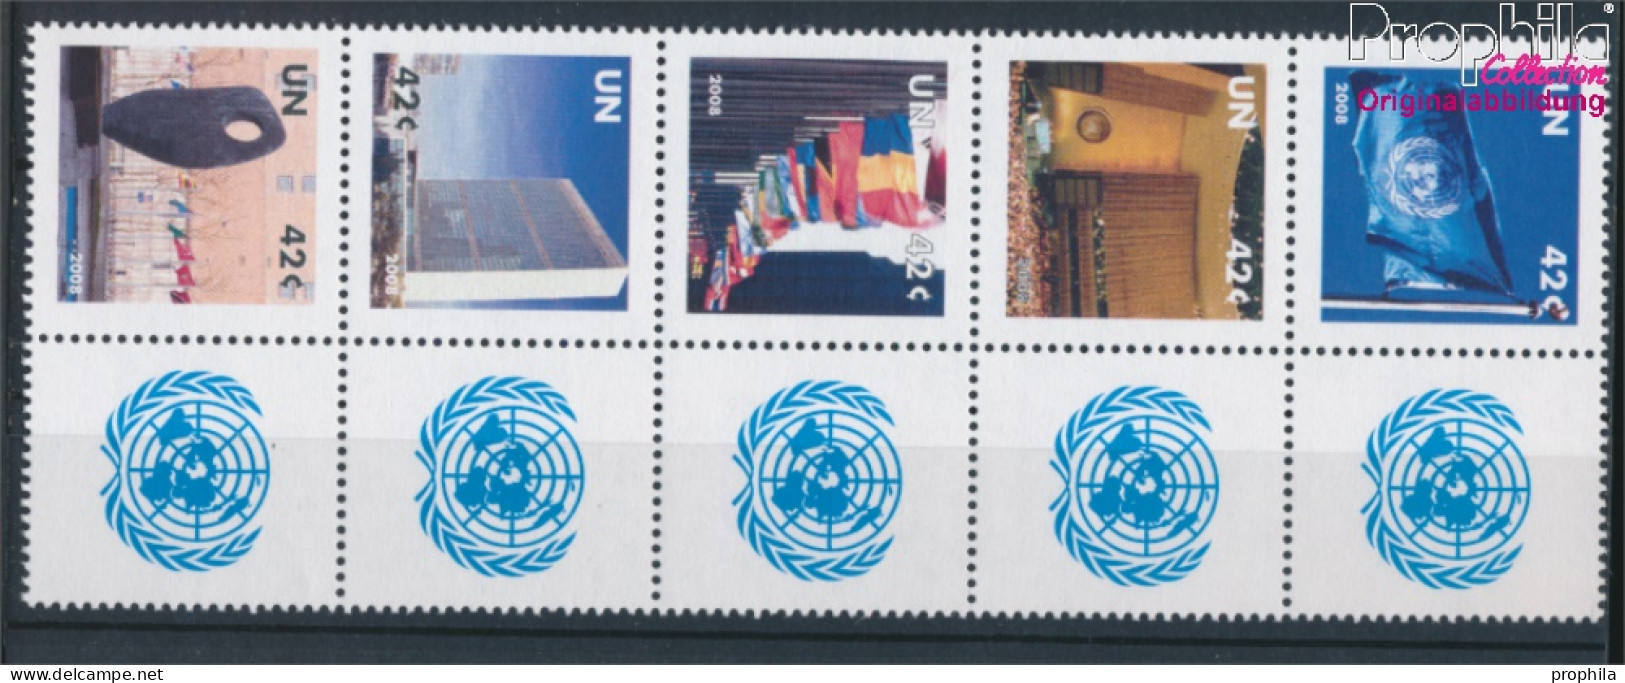 UNO - New York 1091-1095 Zehnerblock (kompl.Ausg.) Postfrisch 2008 Grußmarken (10325900 - Neufs